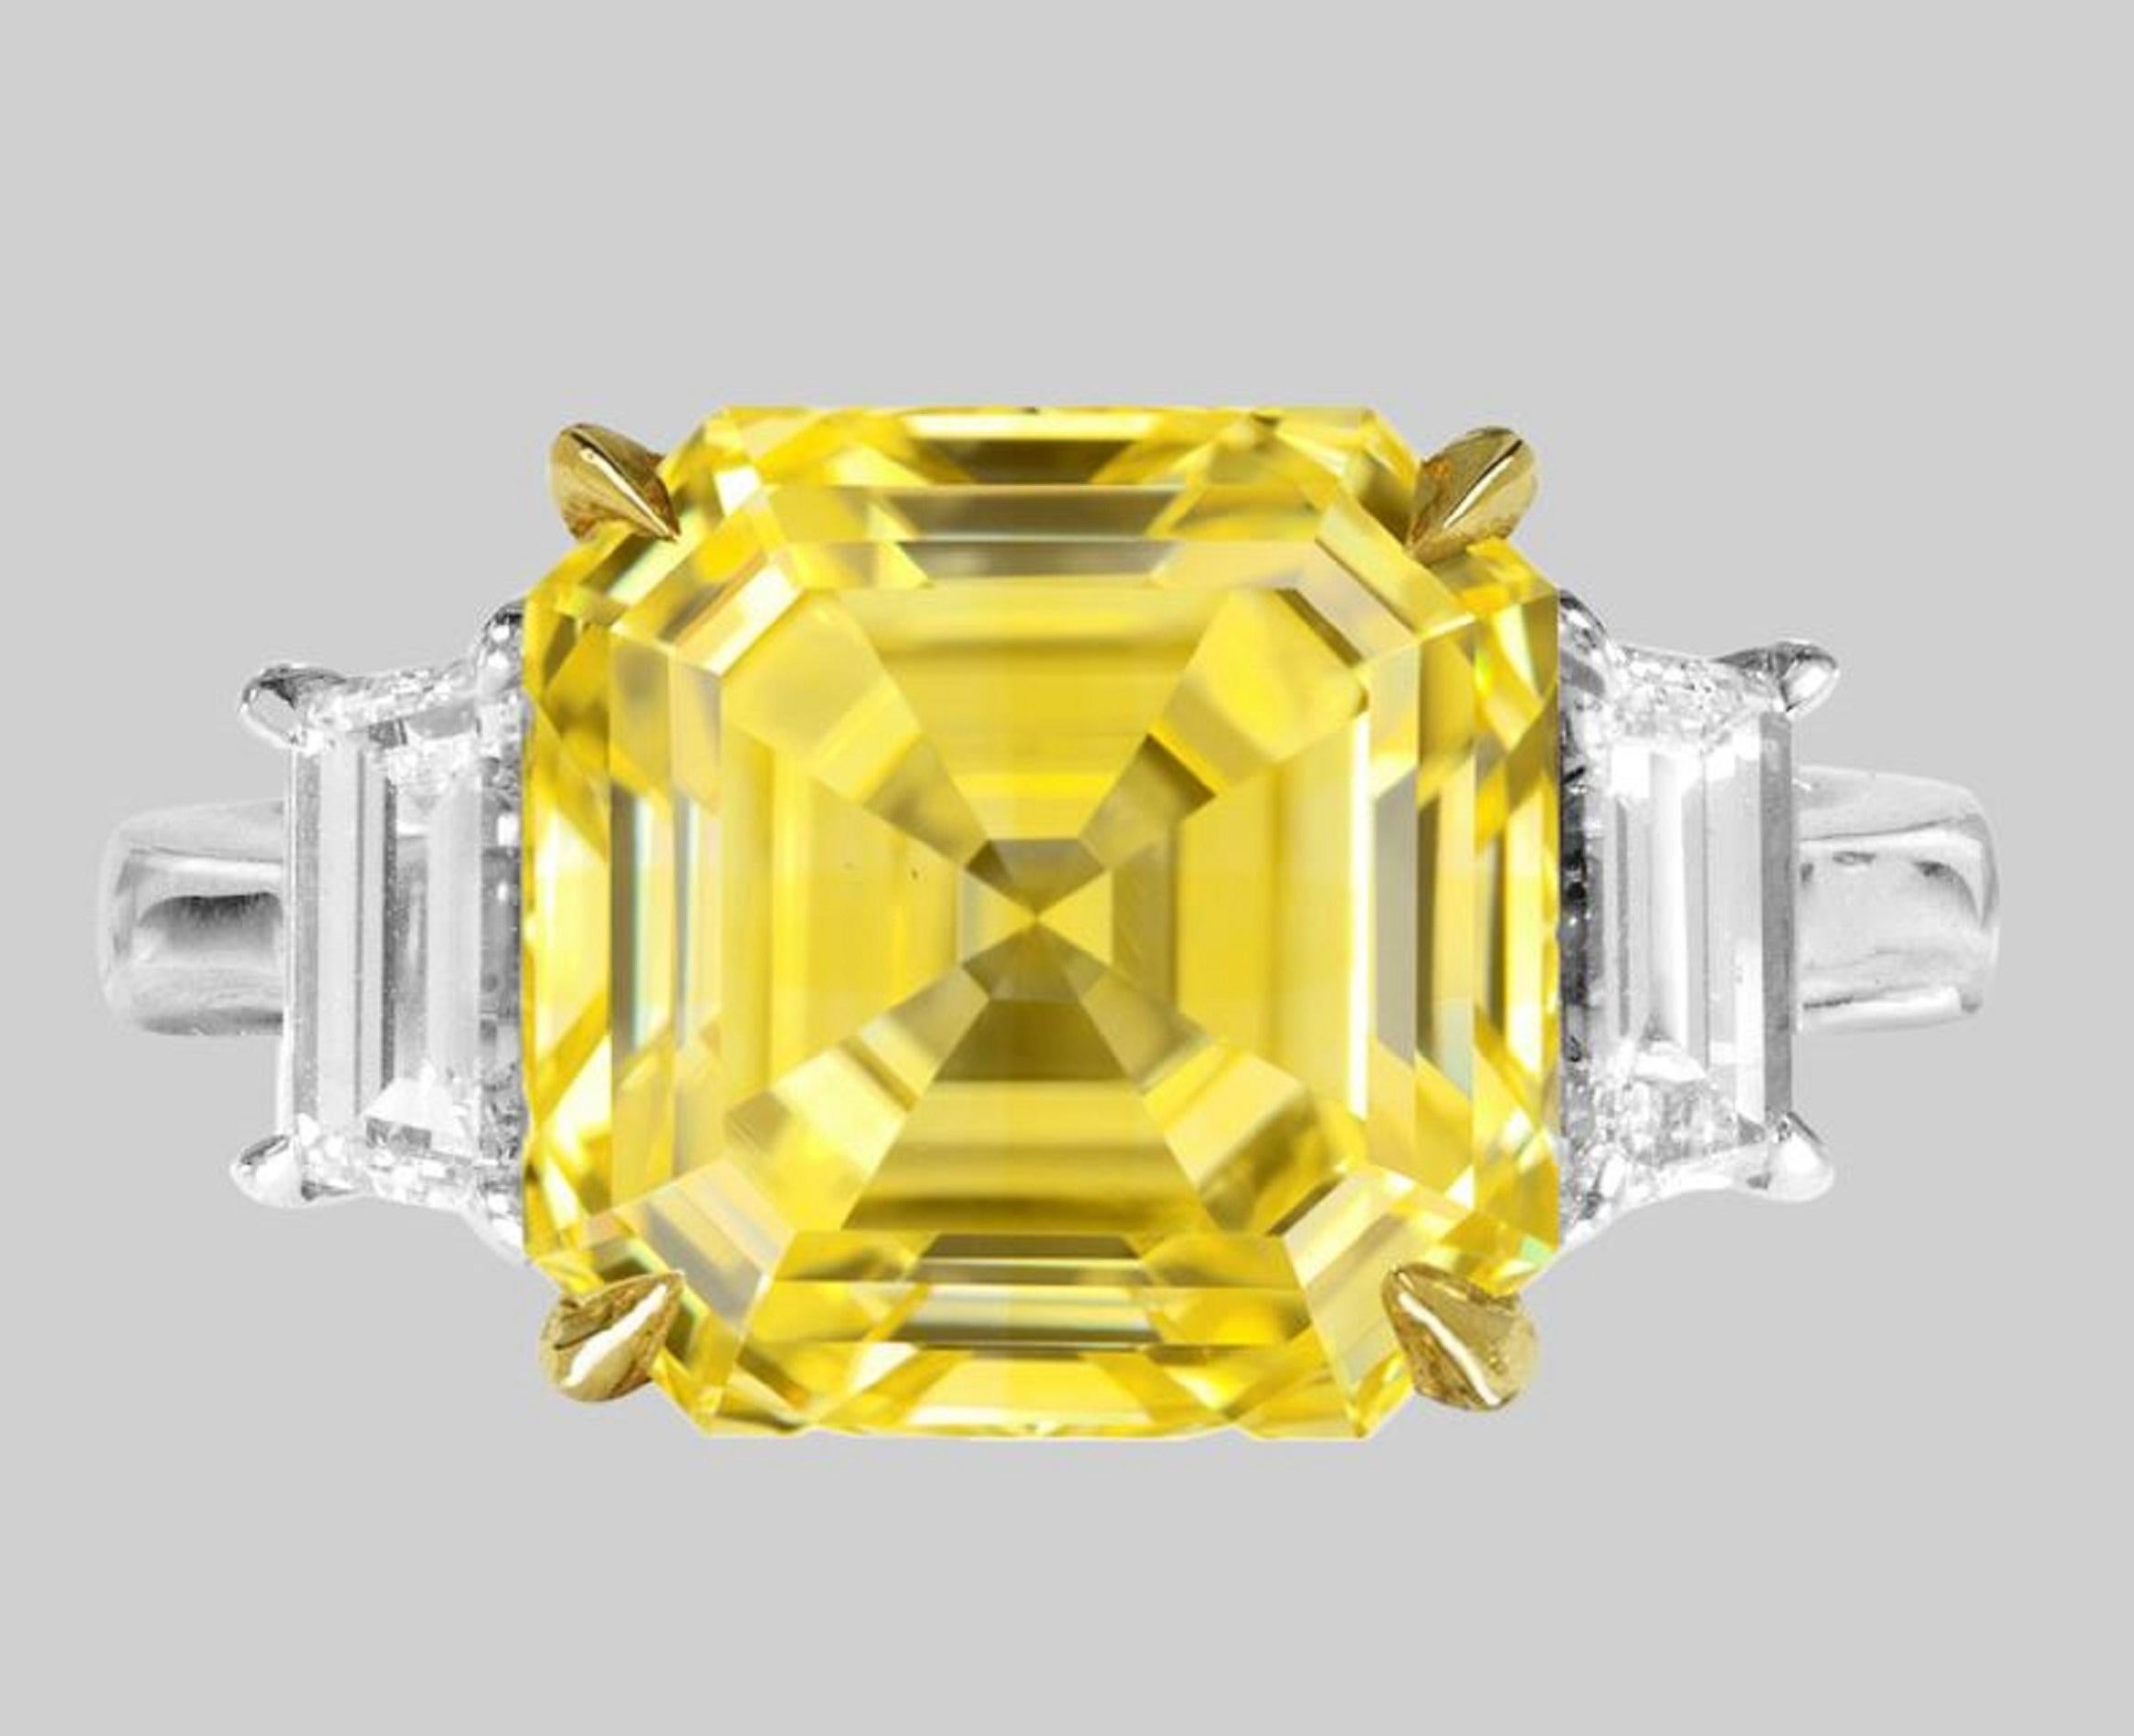 Cette bague exquise est centrée sur un magnifique diamant de 3.50 ct de taille Asscher, un véritable chef-d'œuvre de design et d'artisanat. Le diamant, certifié par le Gemological Institute of America (GIA), affiche une couleur Fancy VIVID Yellow,